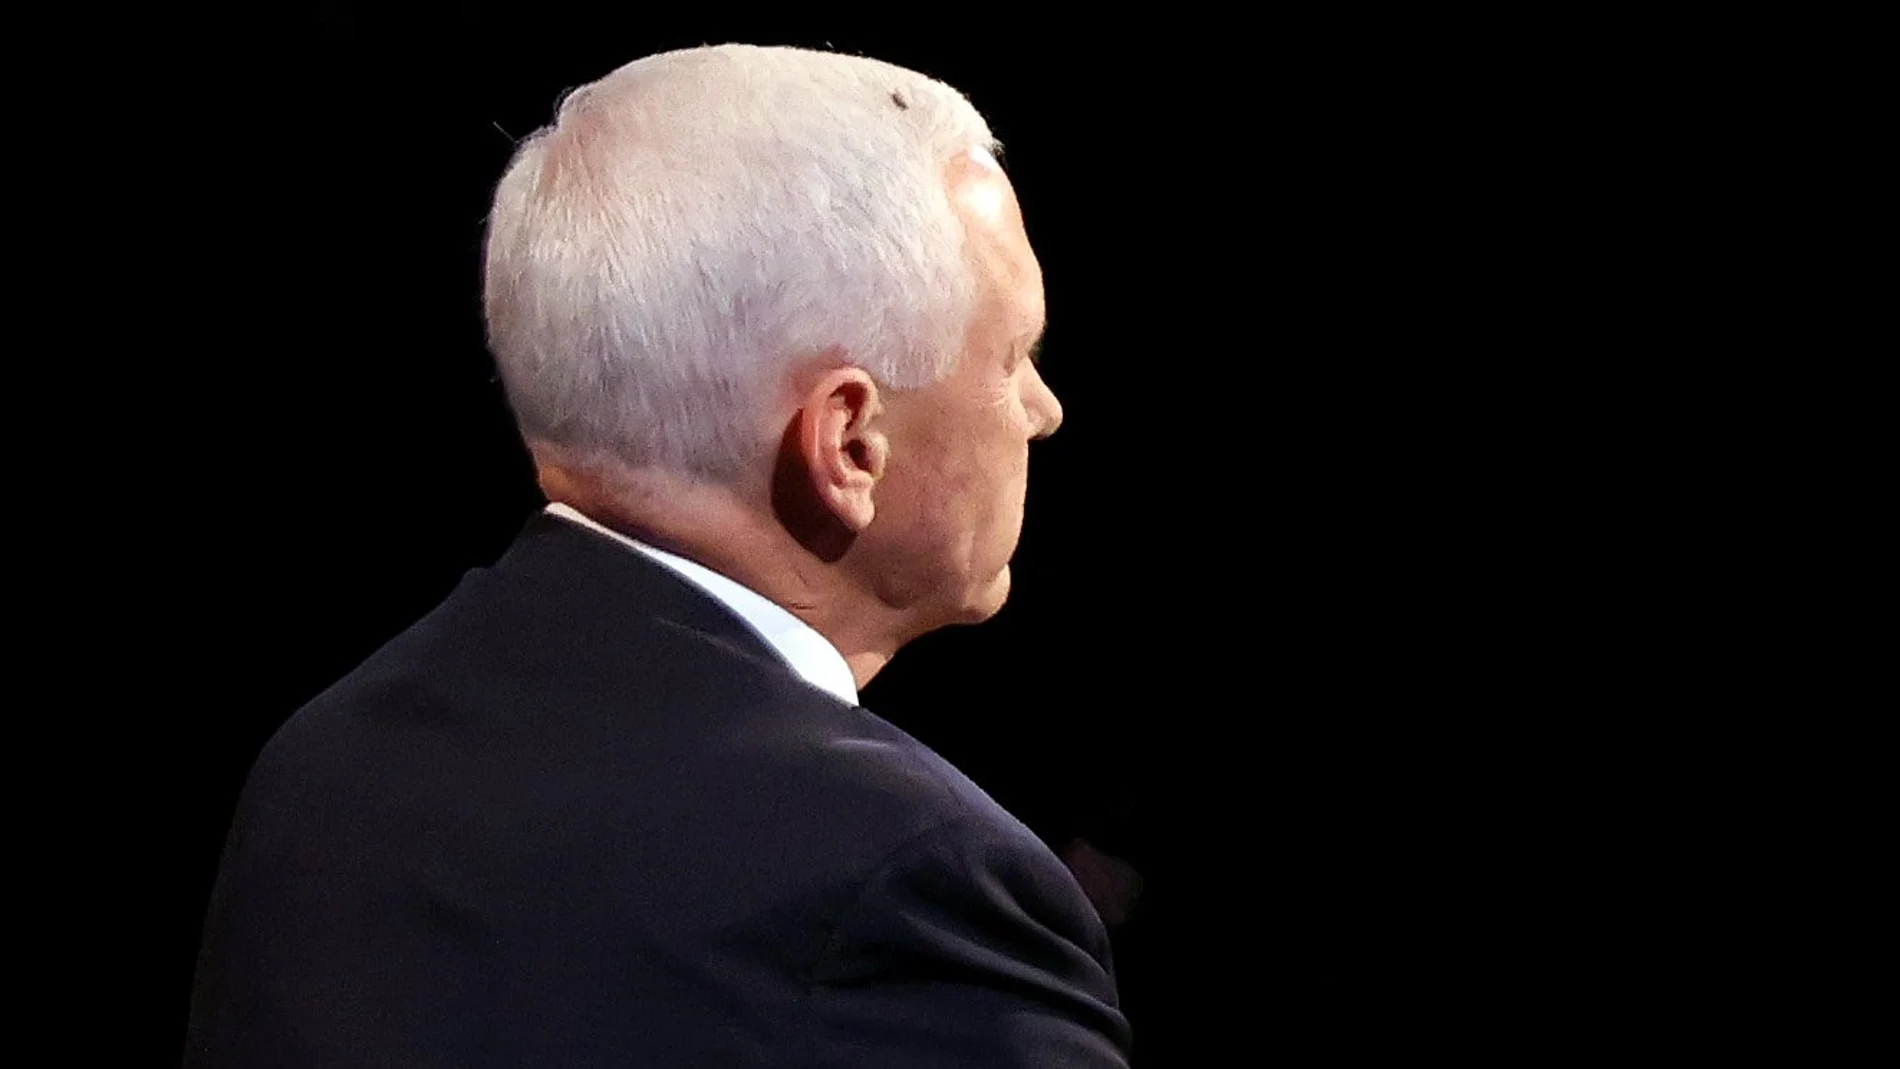 La mosca, en la cabeza del vicepresidente Mike Pence durante el debate